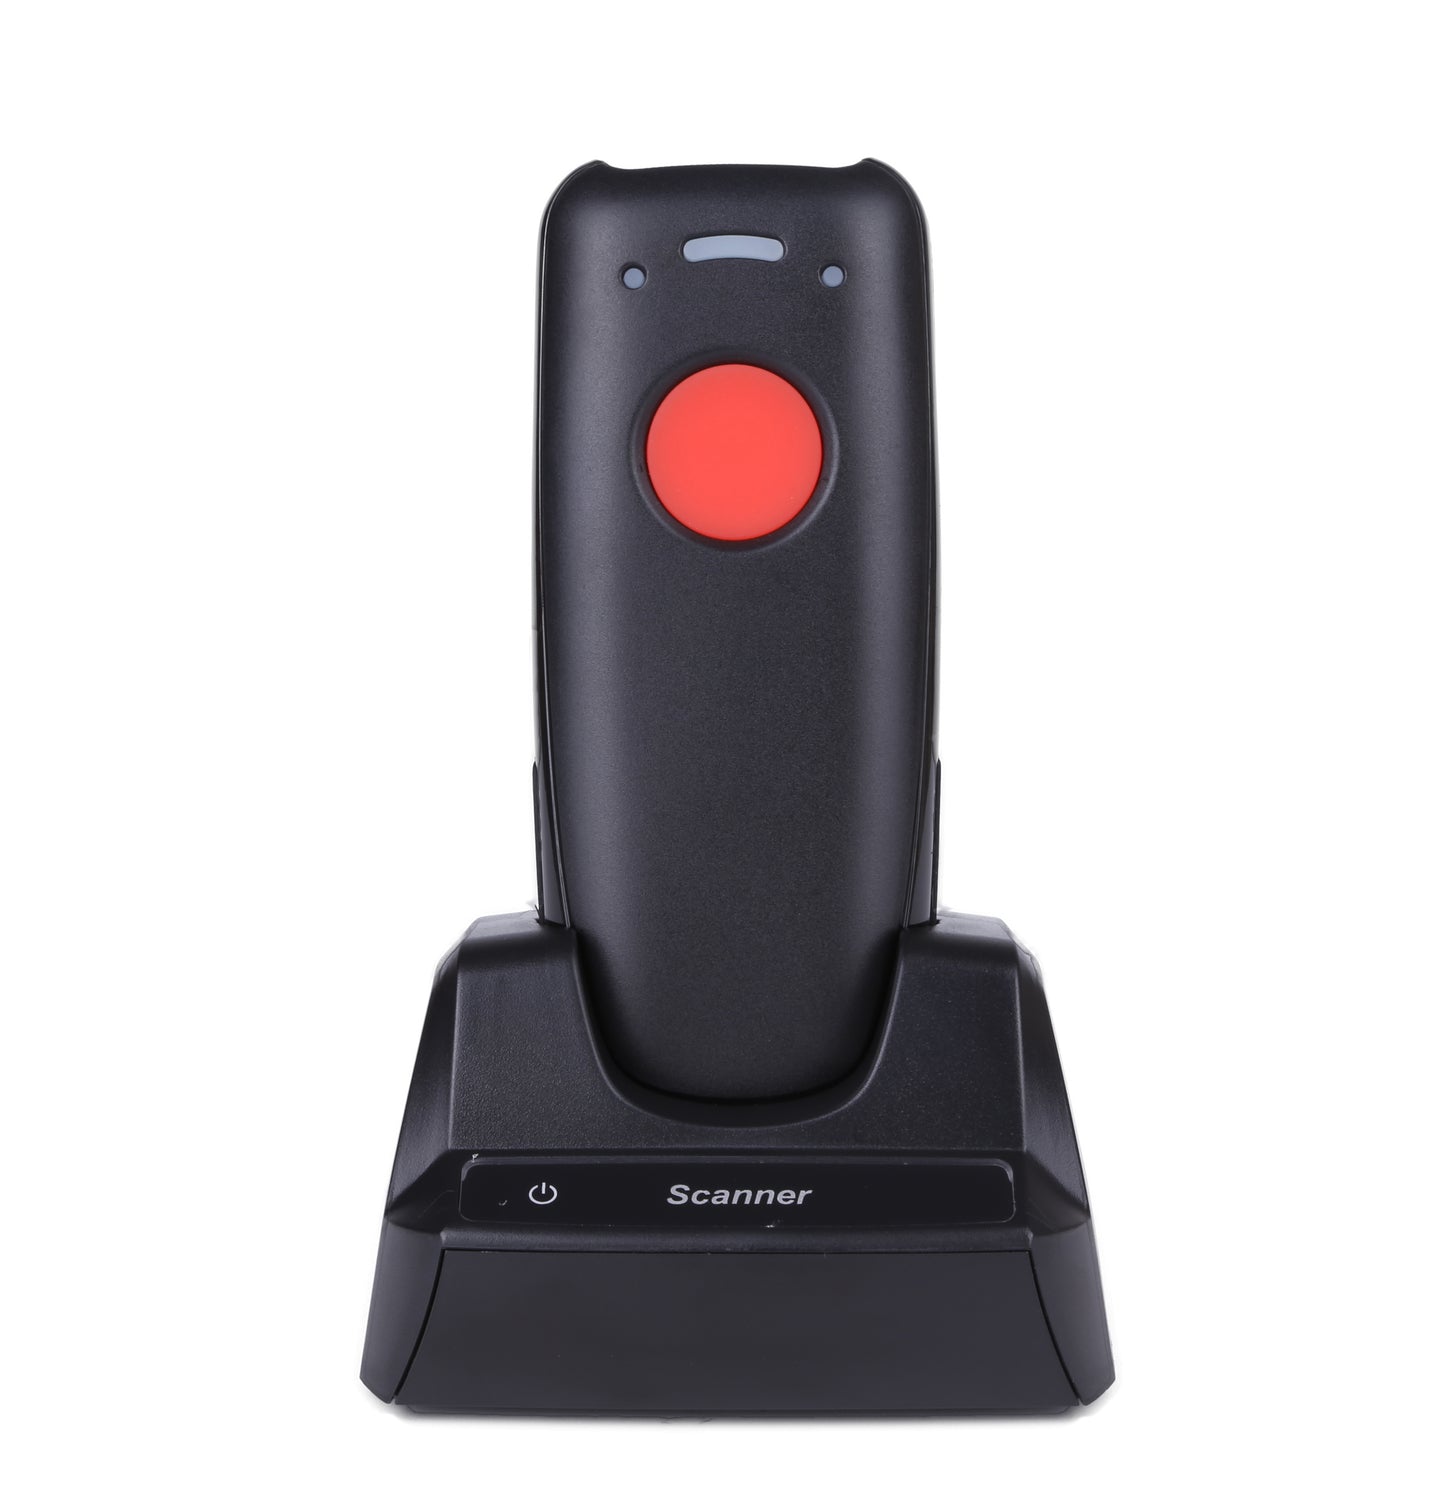 Bluetooth 1D CCD Barcode Scanner WD-BT88